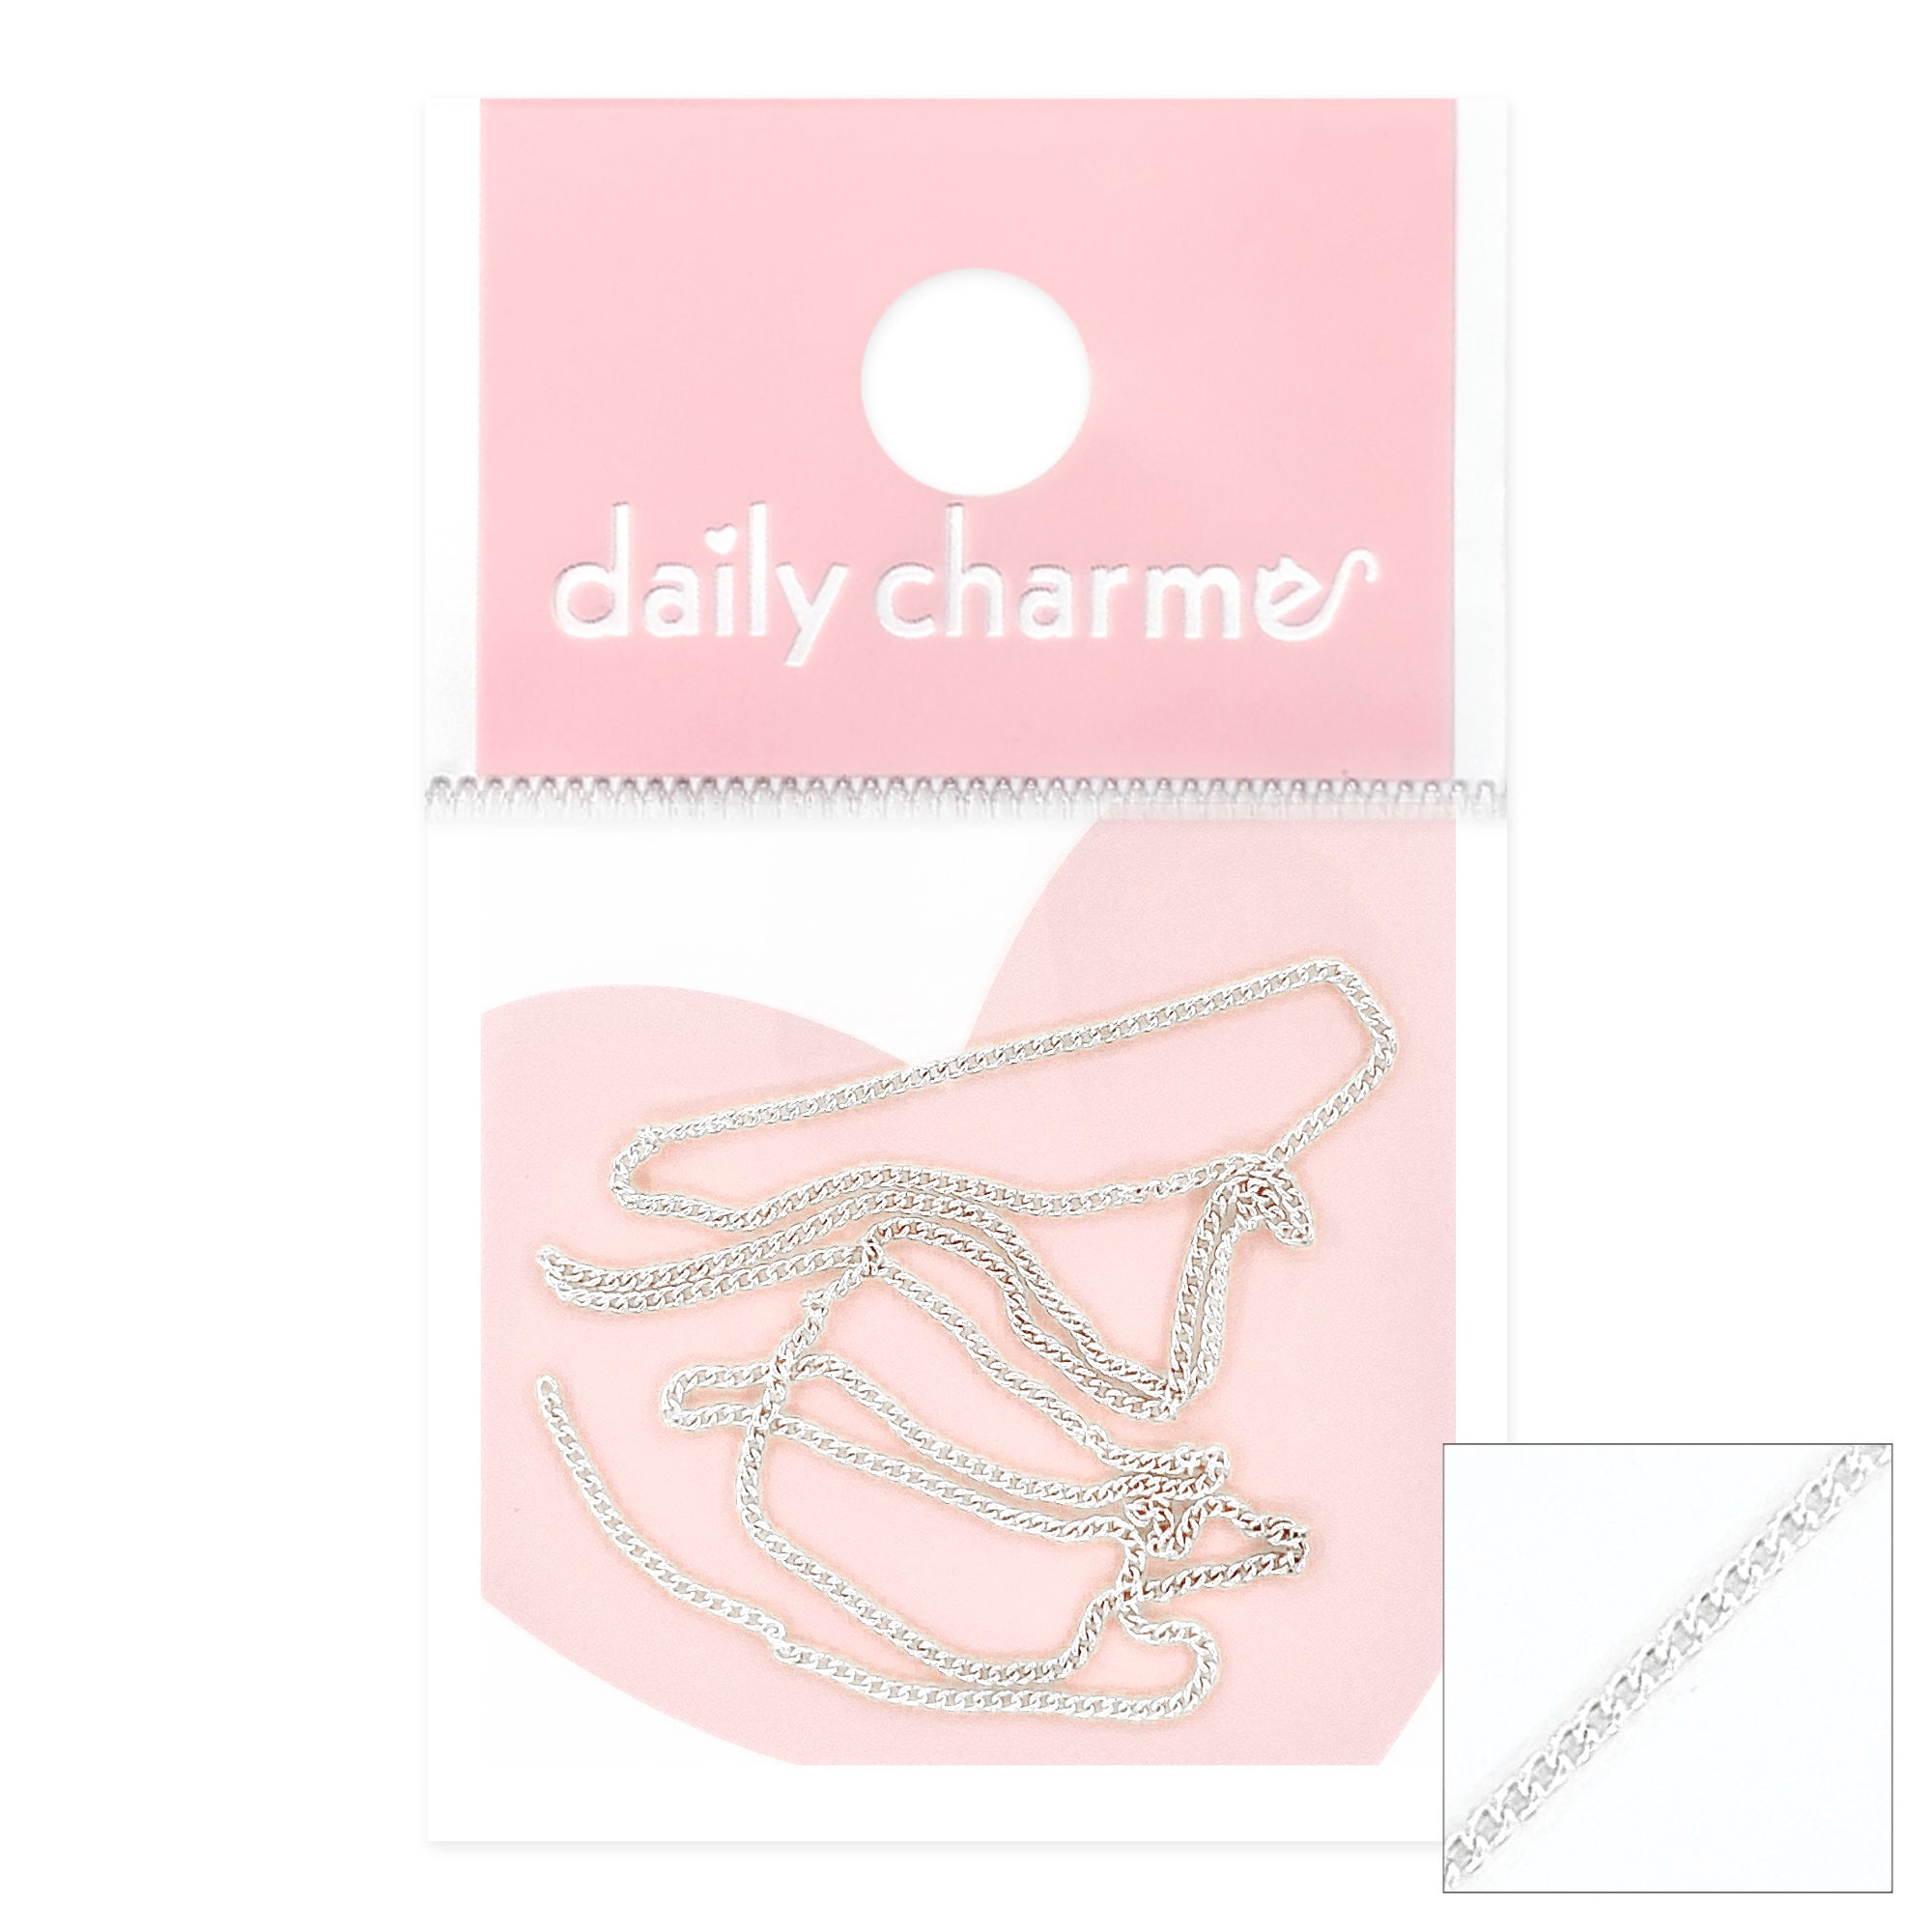 Daily Charme Nail Art | Ultra Thin 1MM Metallic Silver Chain